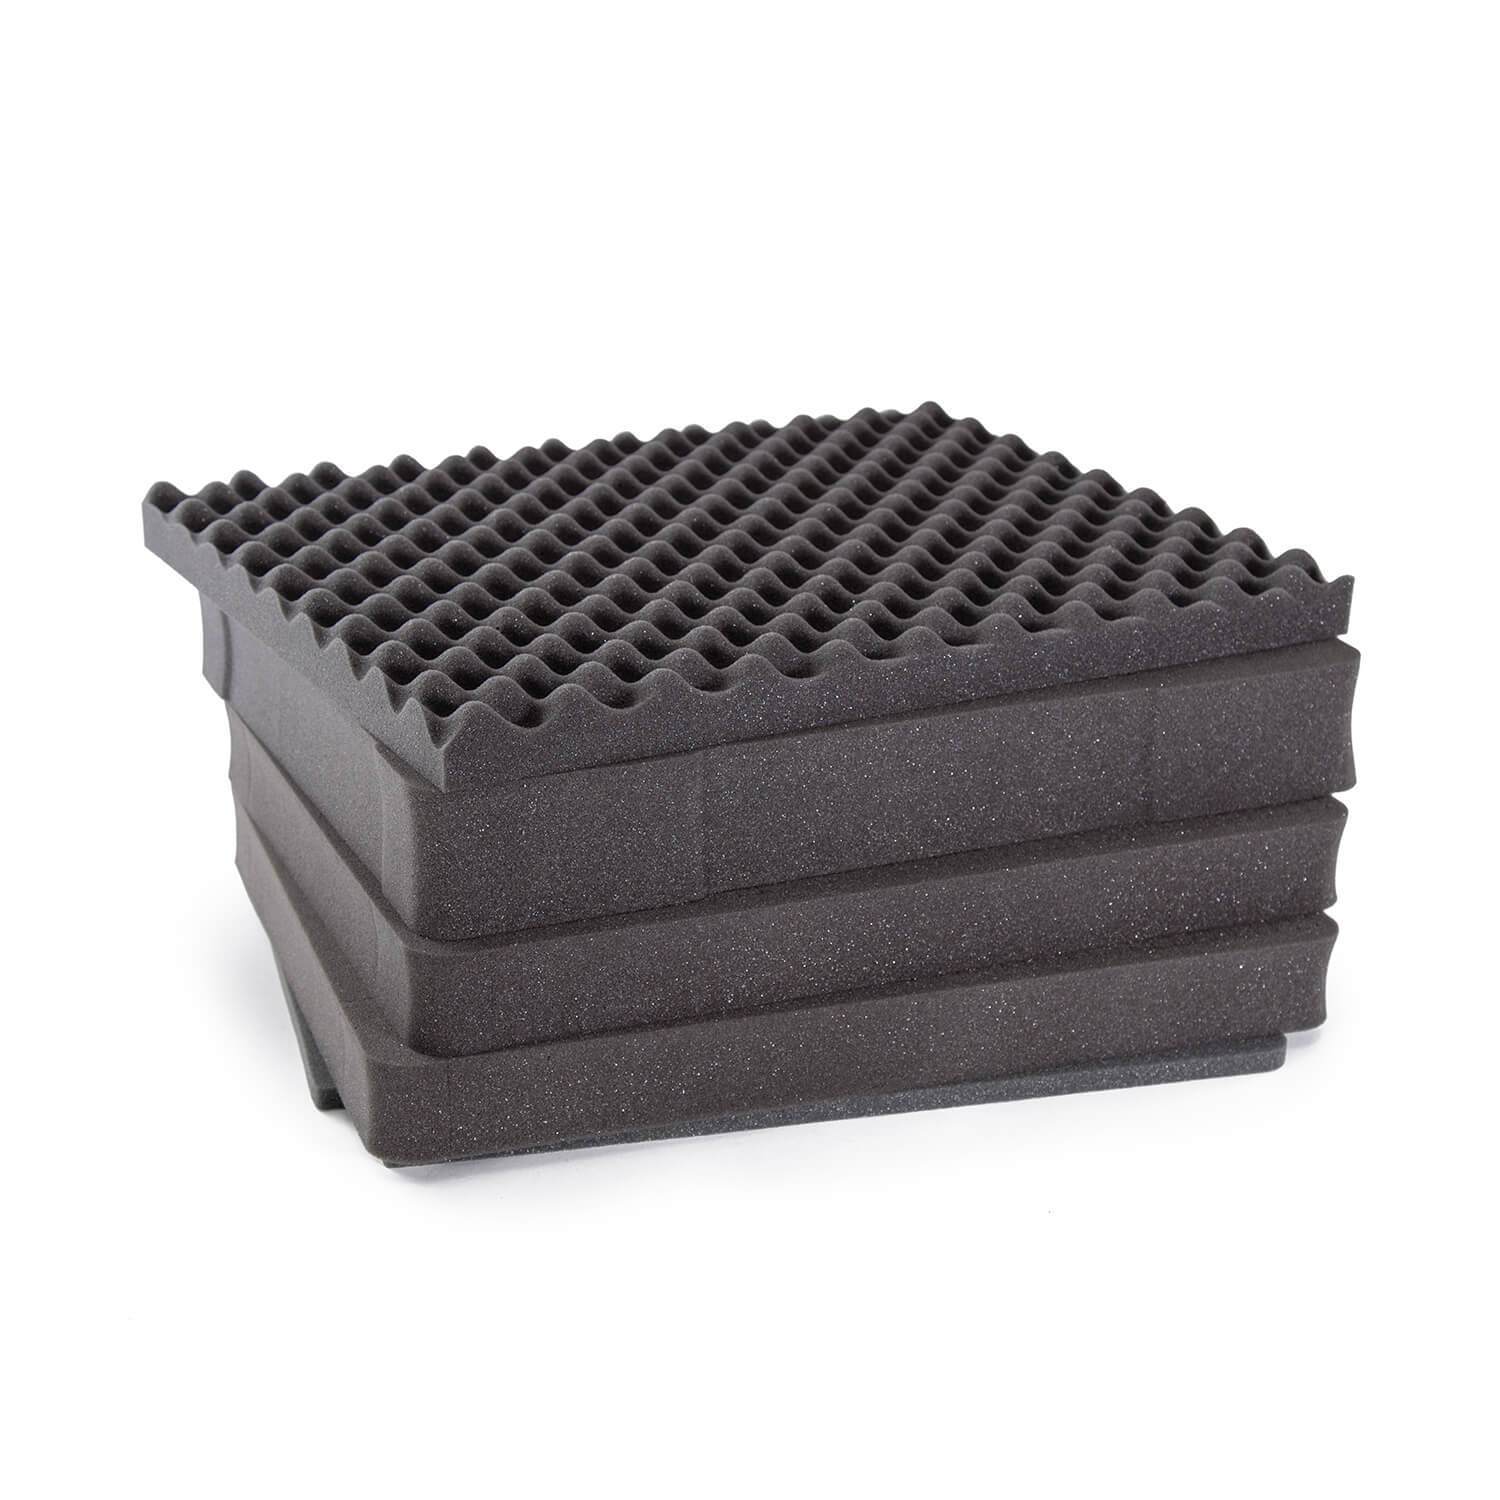 Nanuk Multi-Layered Cubed Foam Insert for the 938 Case